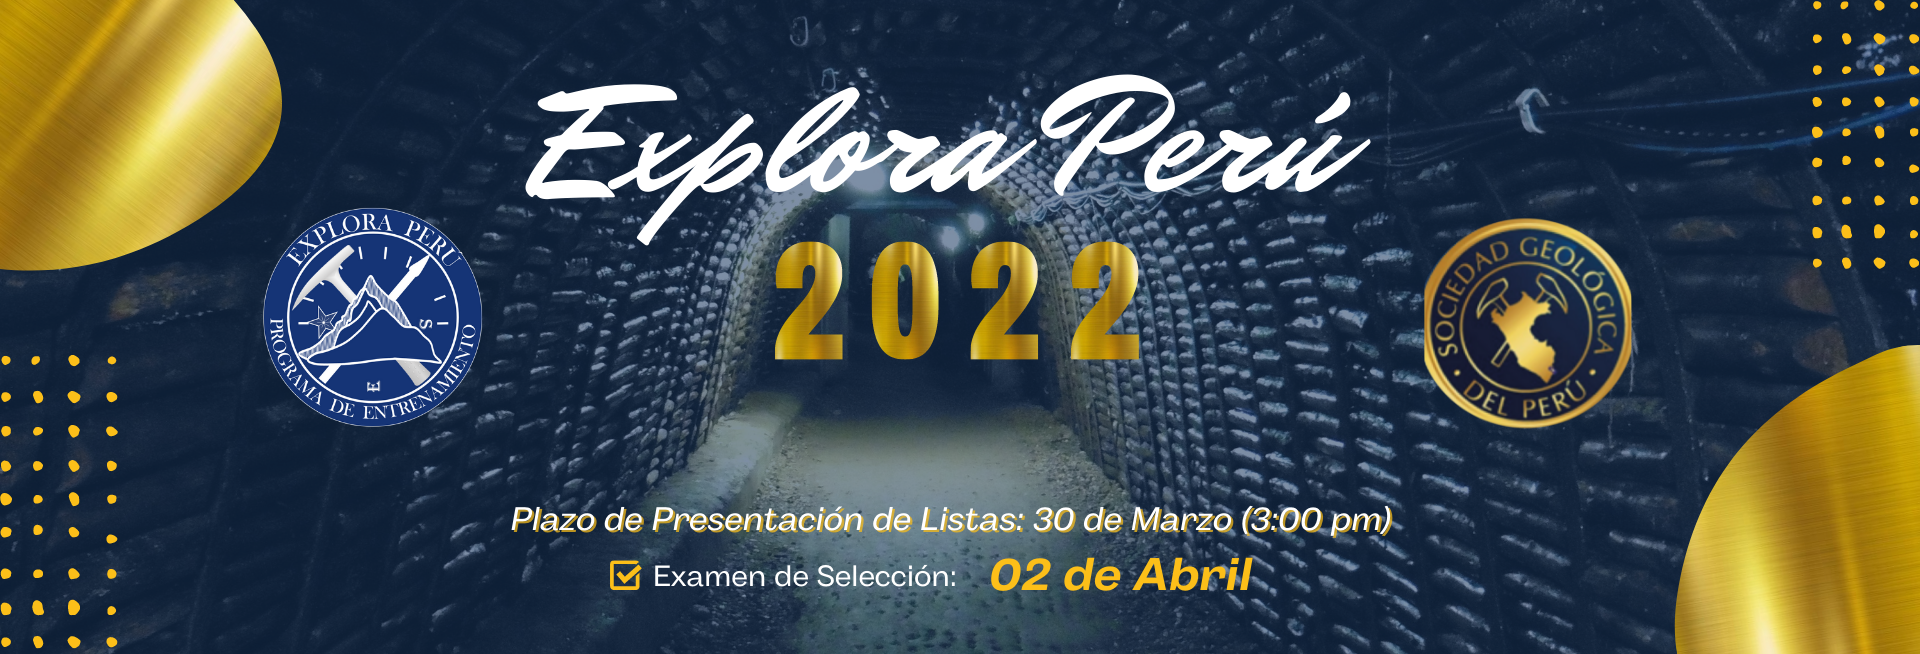 1_Explora Peru 2022_Examen